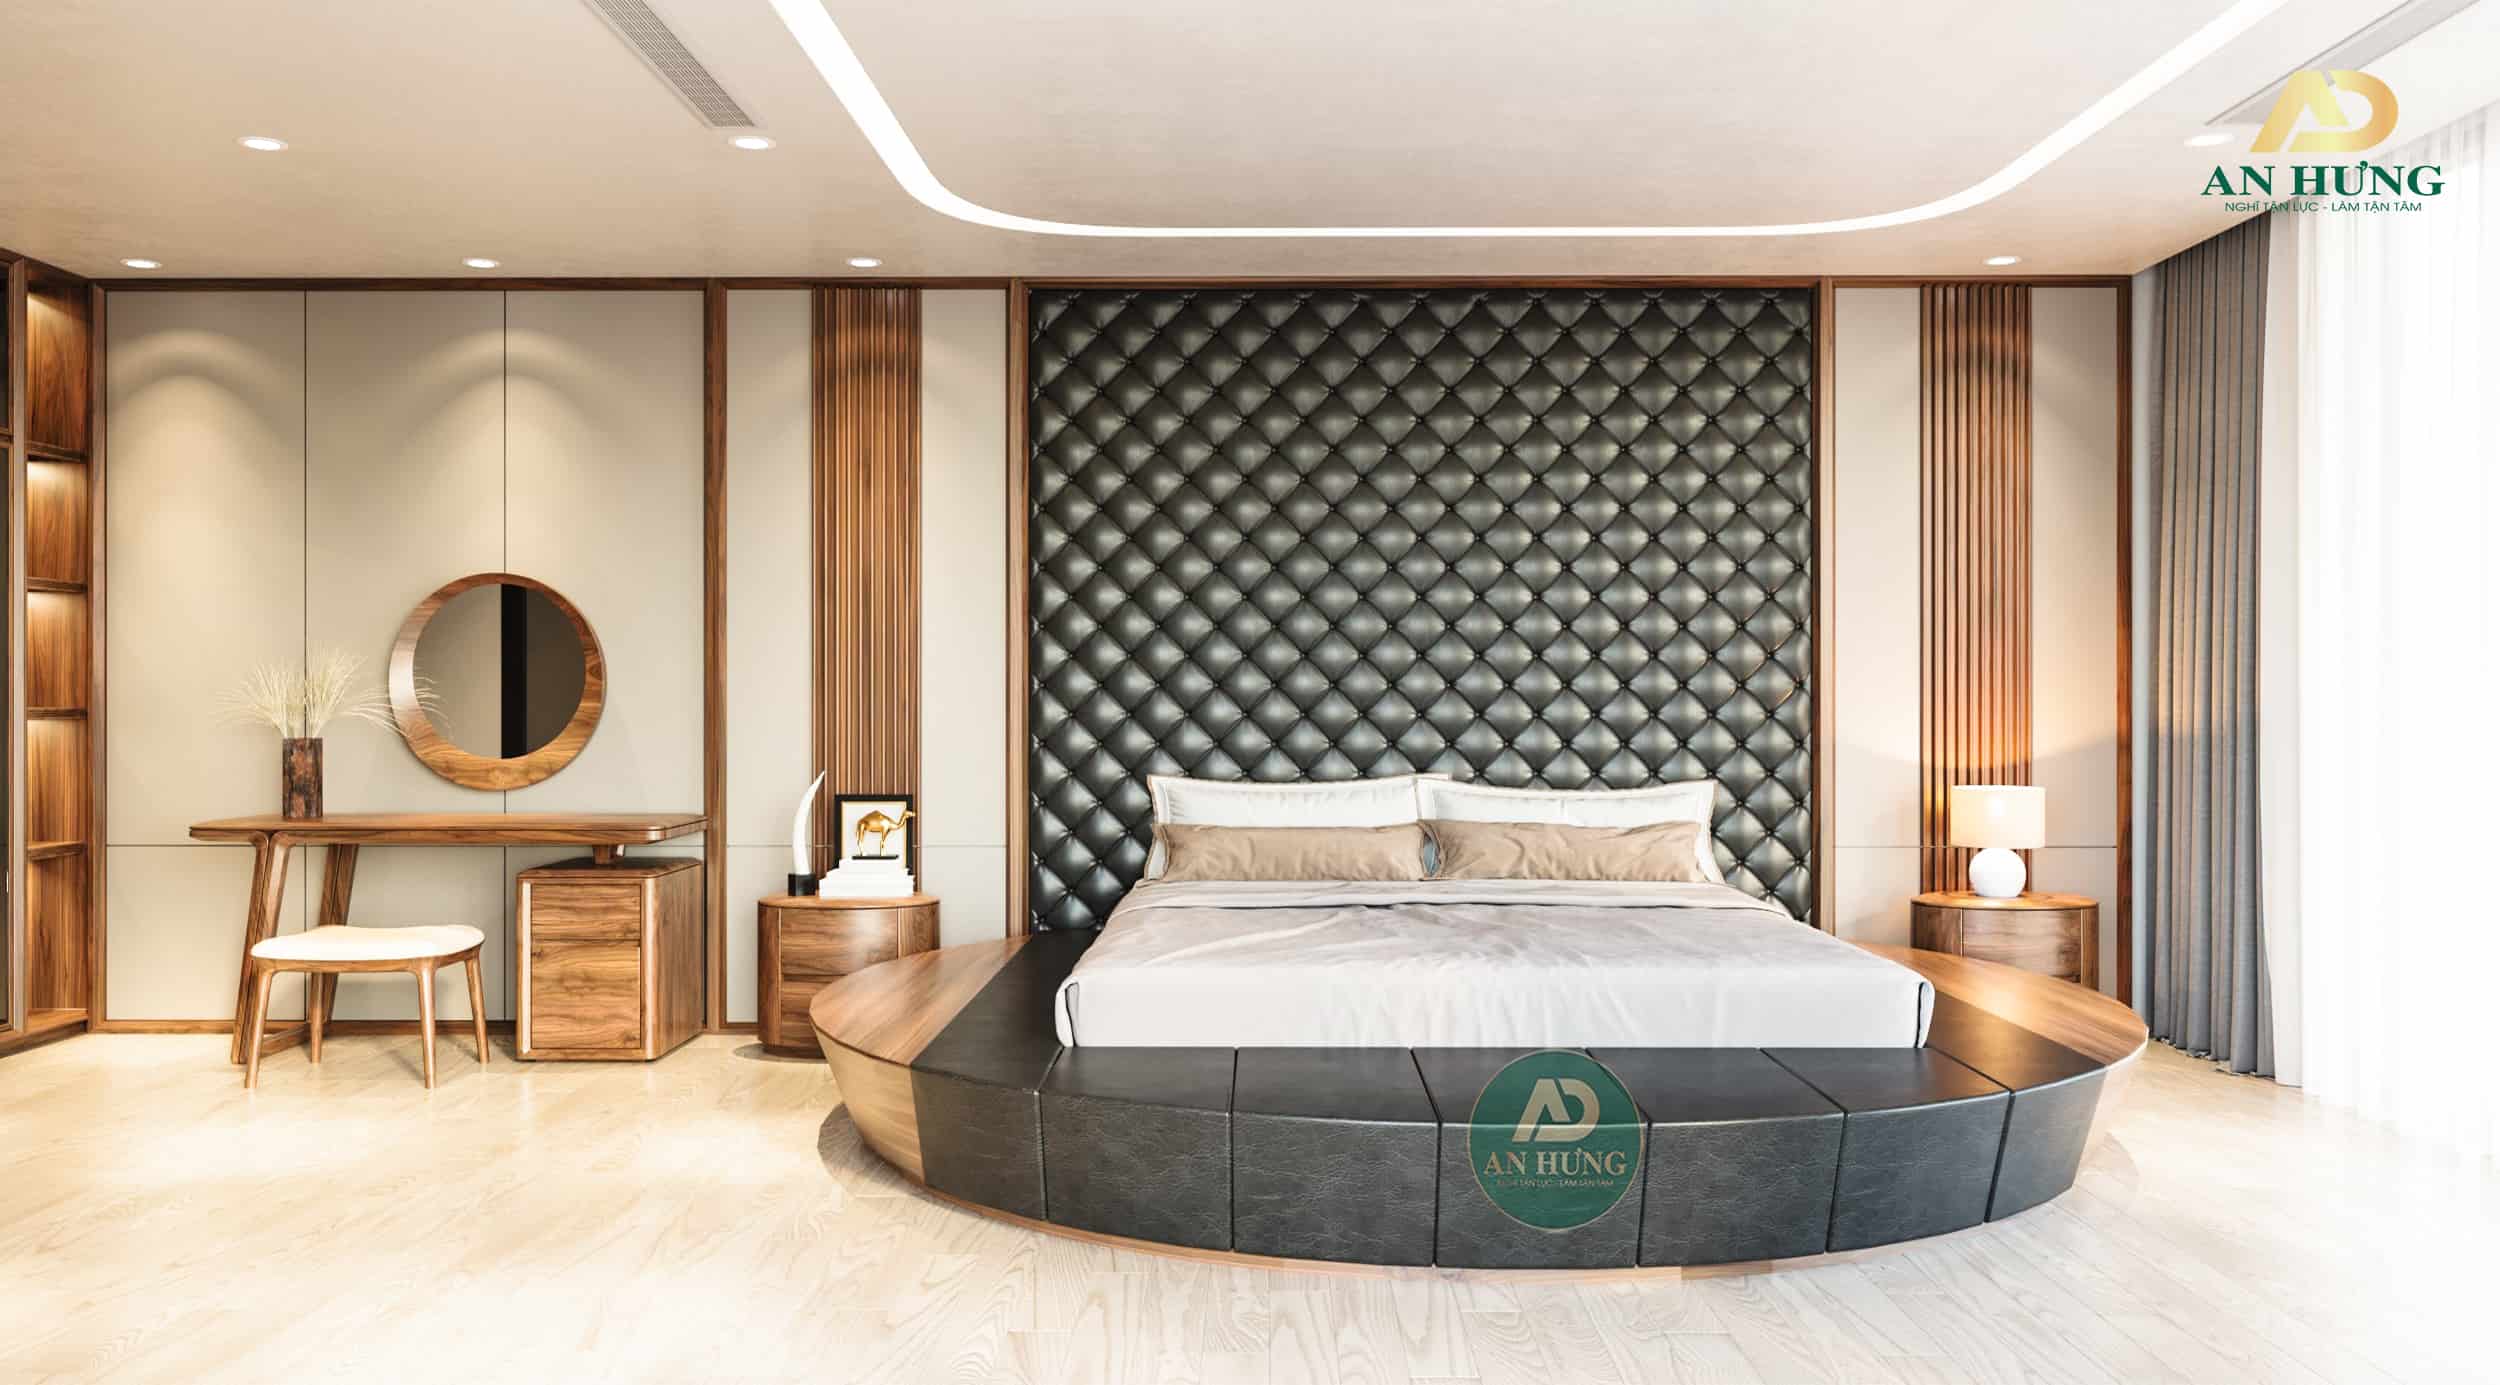 Nội thất phòng ngủ gỗ óc chó với chiếc giường tròn làm điểm nhấn trung tâm